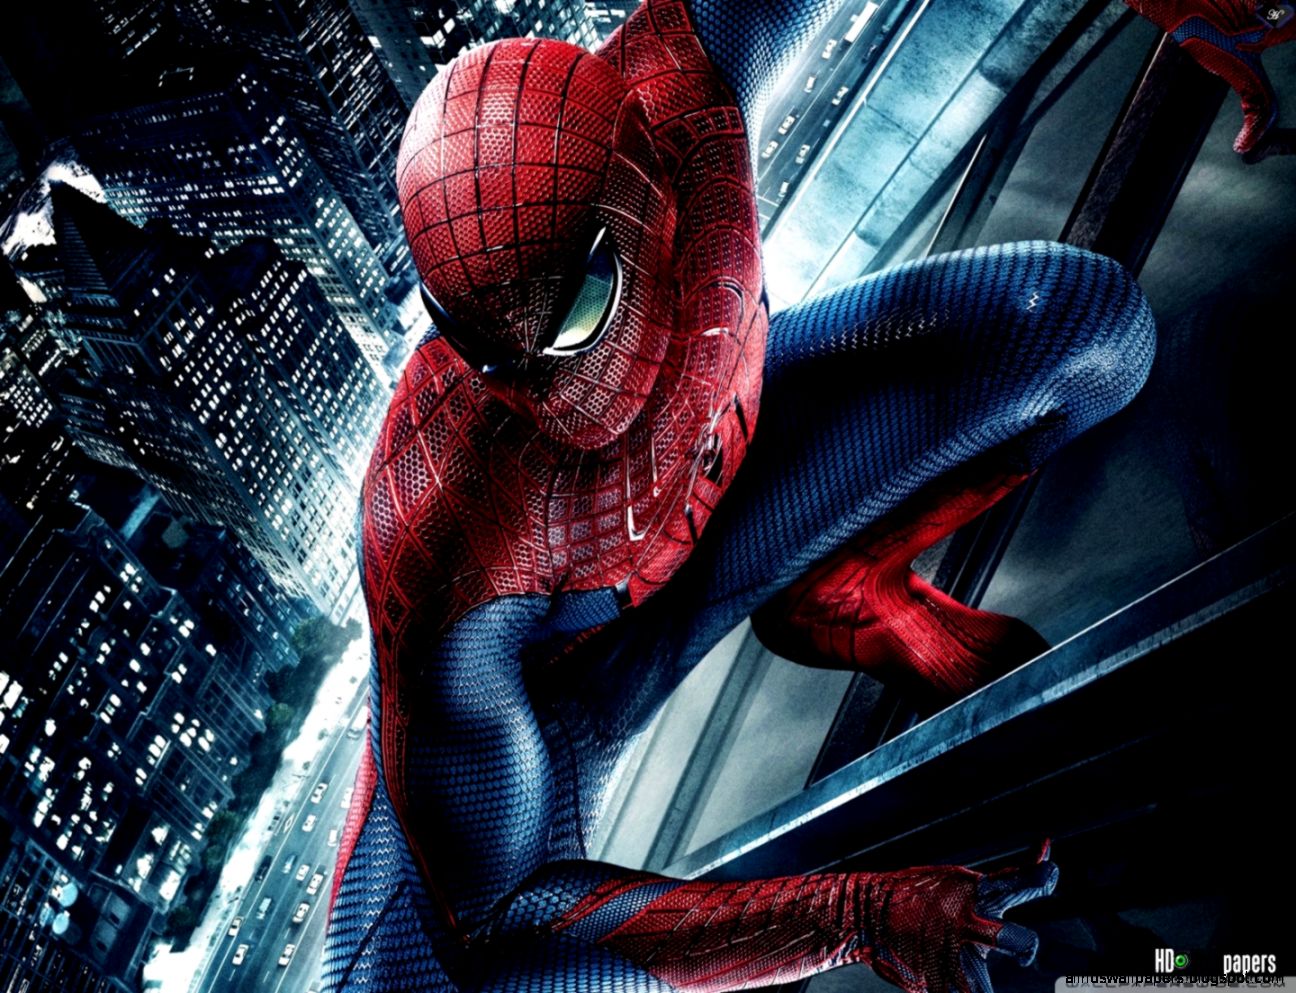 fond d'écran spiderman hd 1080p,homme araignée,personnage fictif,super héros,oeuvre de cg,goblin vert